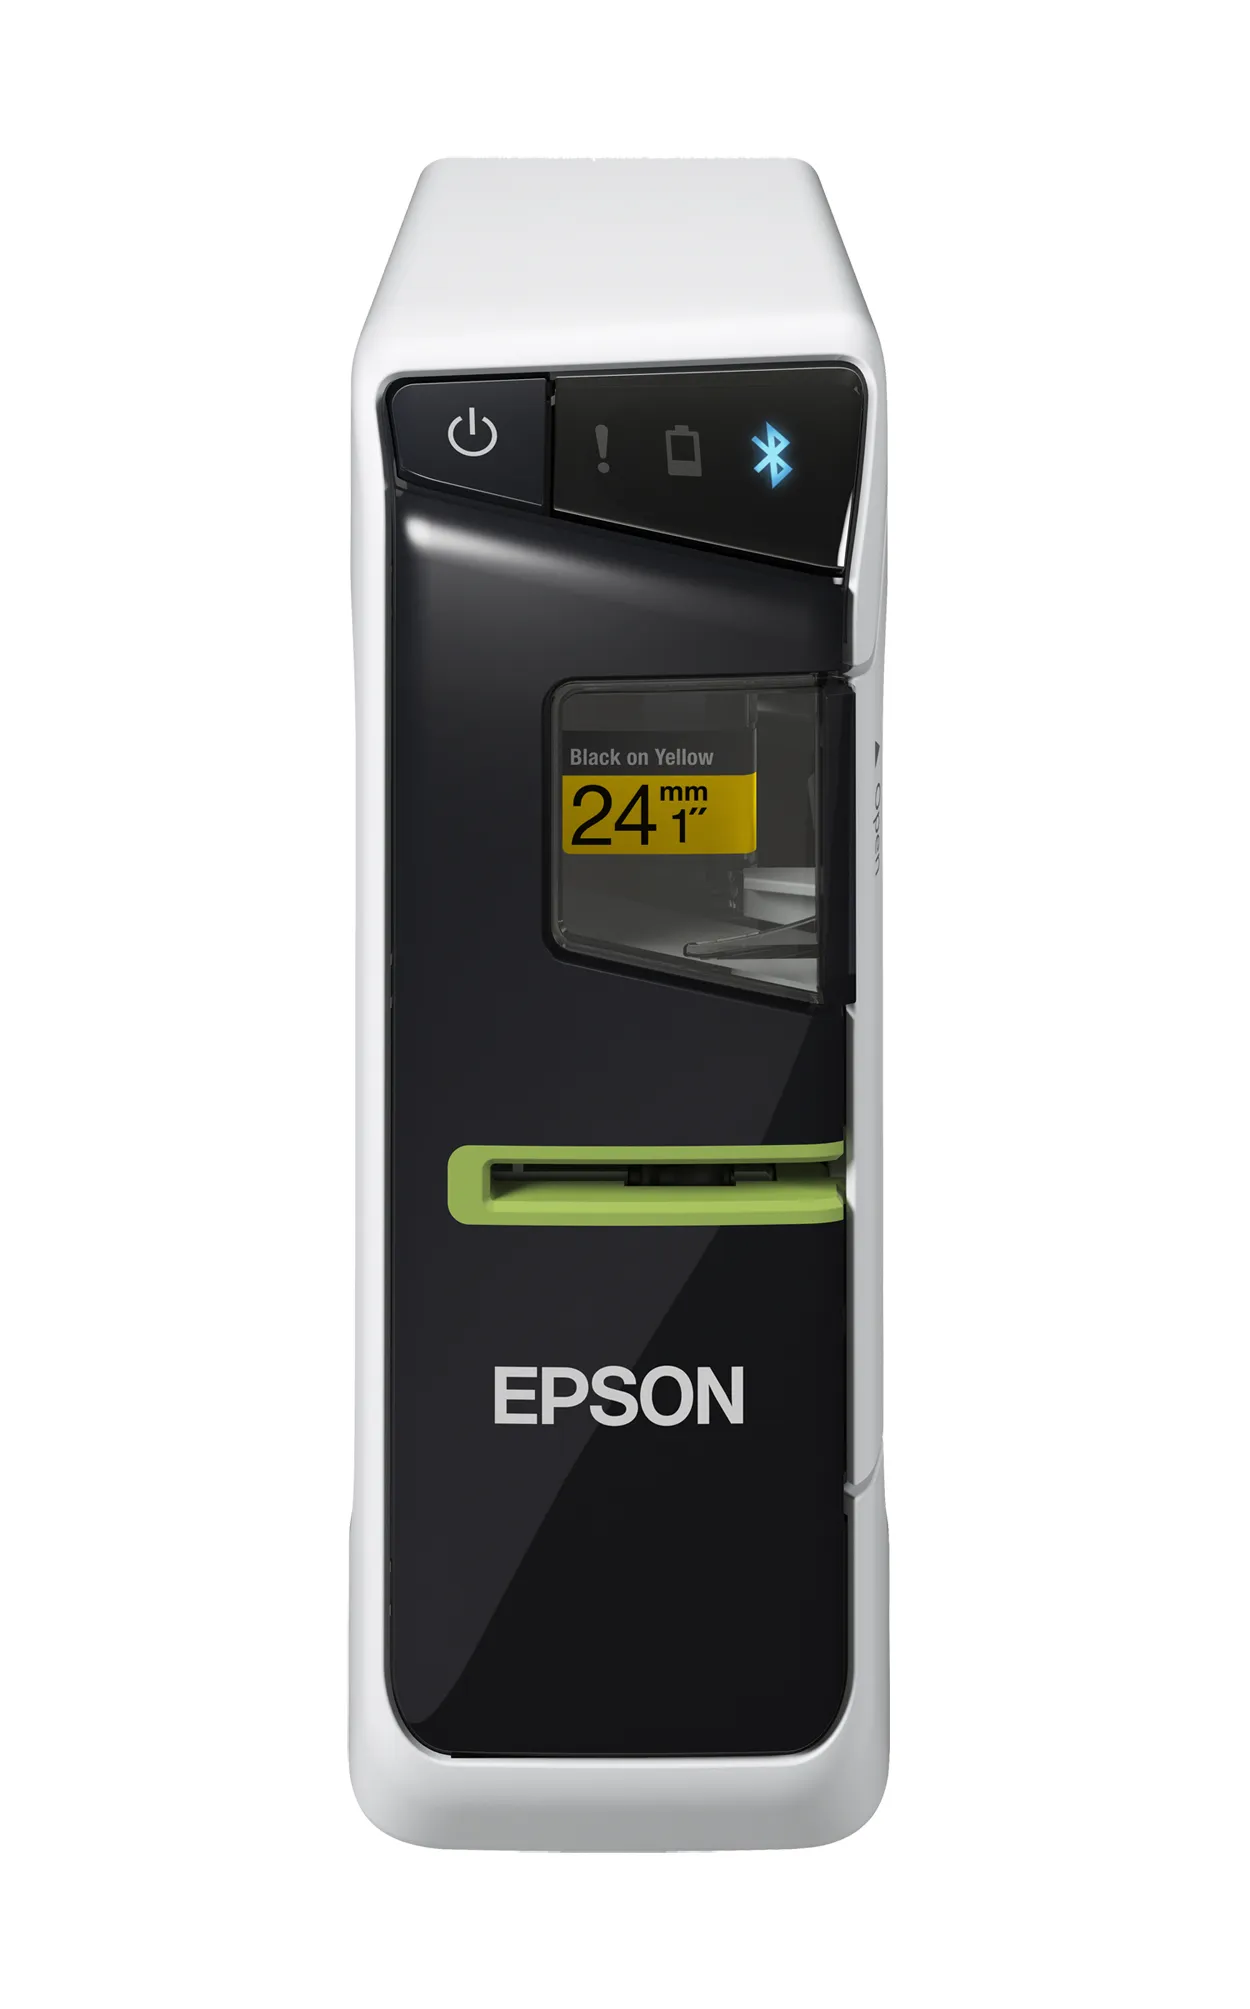 Vente Epson LabelWorks LW-600P Epson au meilleur prix - visuel 4